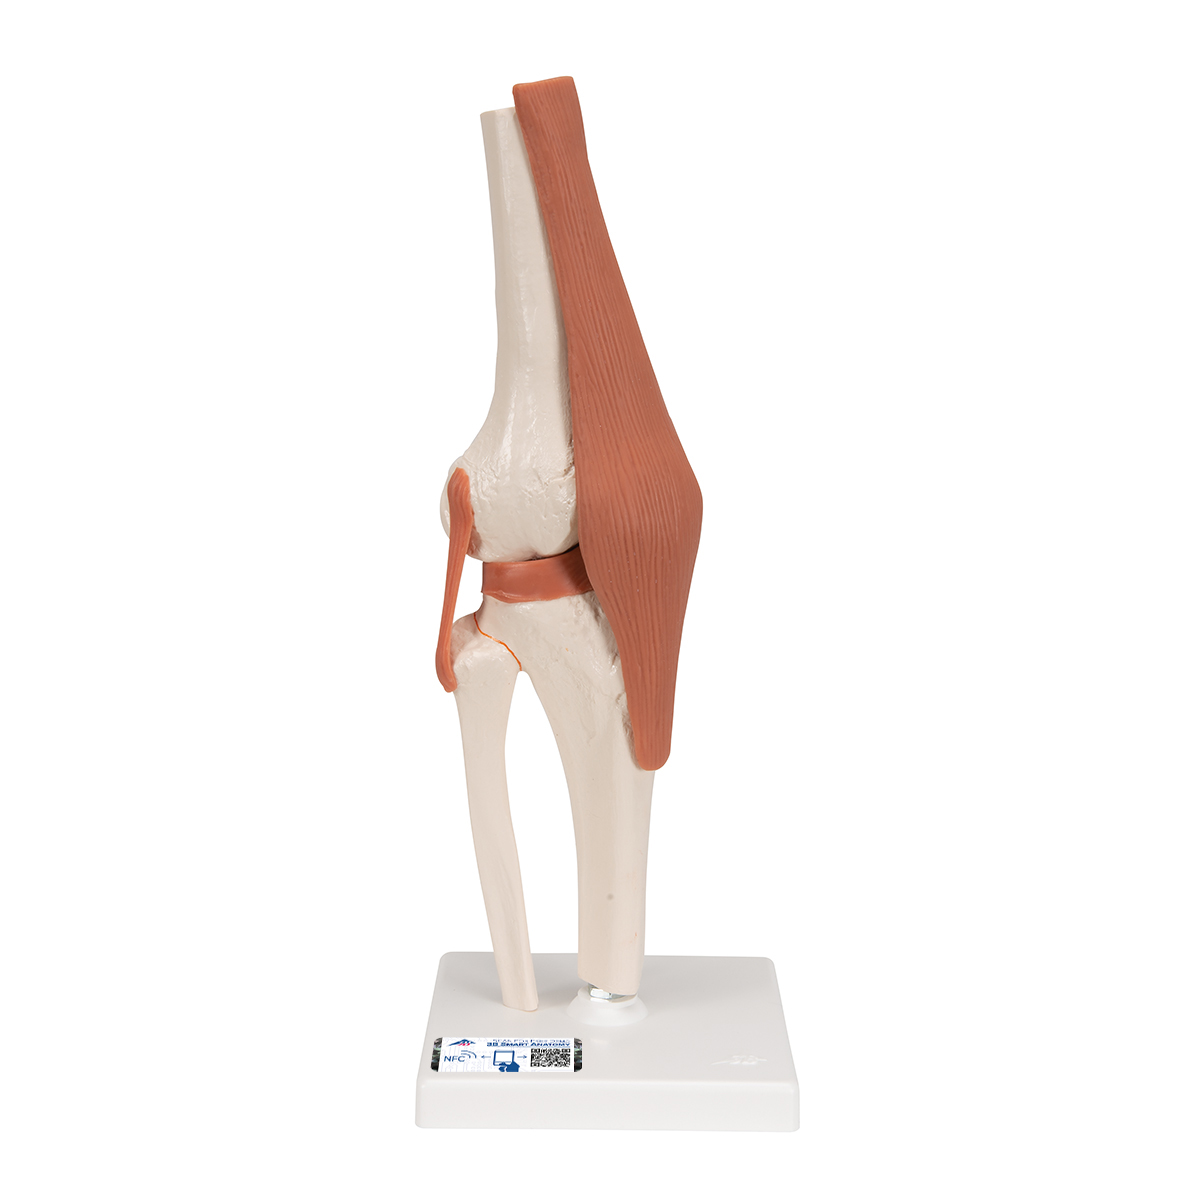 Funktionales Kniegelenkmodell - 3B Smart Anatomy, Bestellnummer 1000163, A82, 3B Scientific